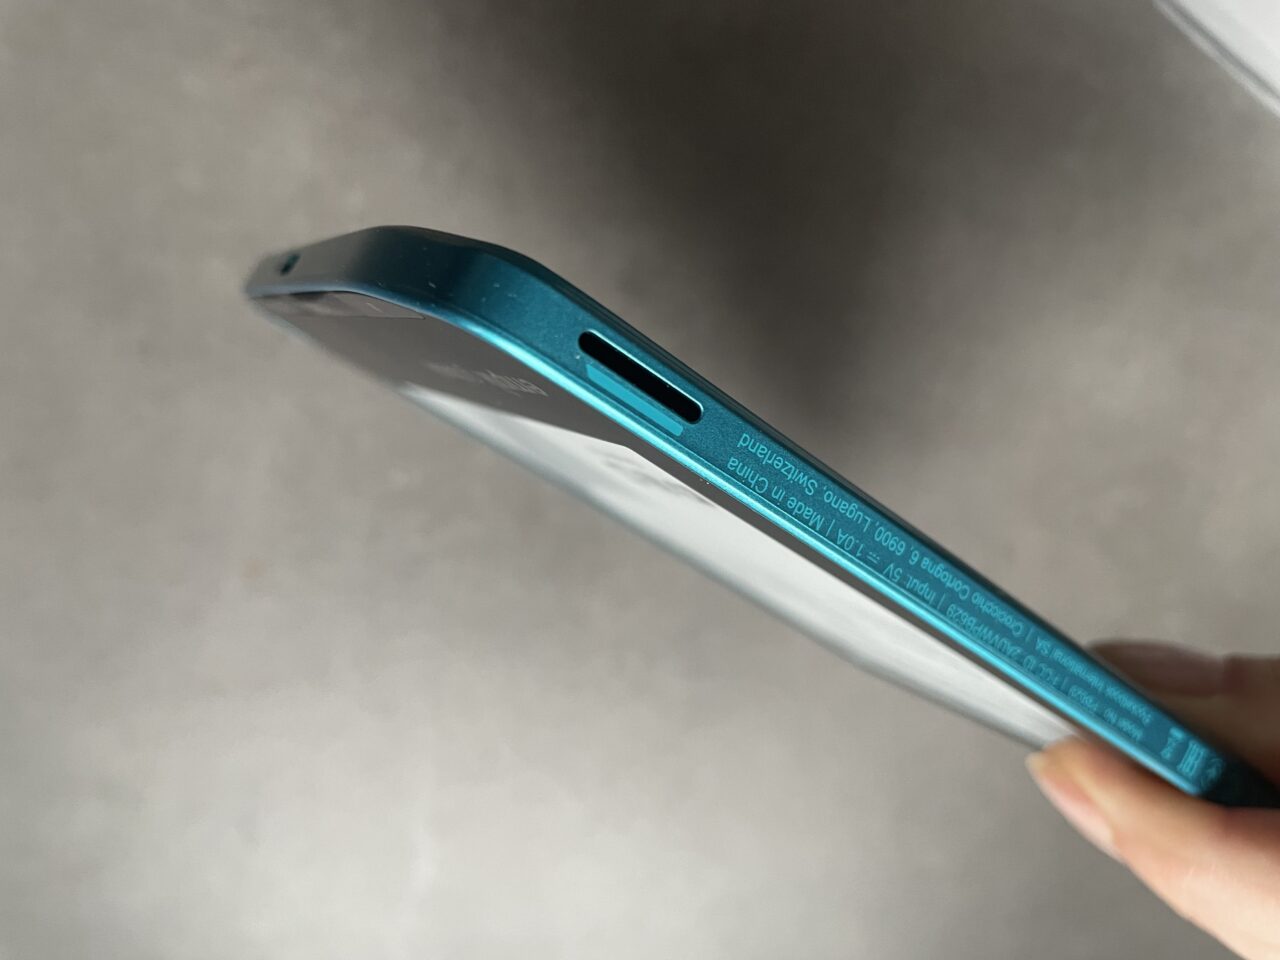 Niebieski smartfon trzymany w dłoni, ukazany skośnie od góry, z widocznym włącznikiem oraz slotem na kartę SIM lub microSD.